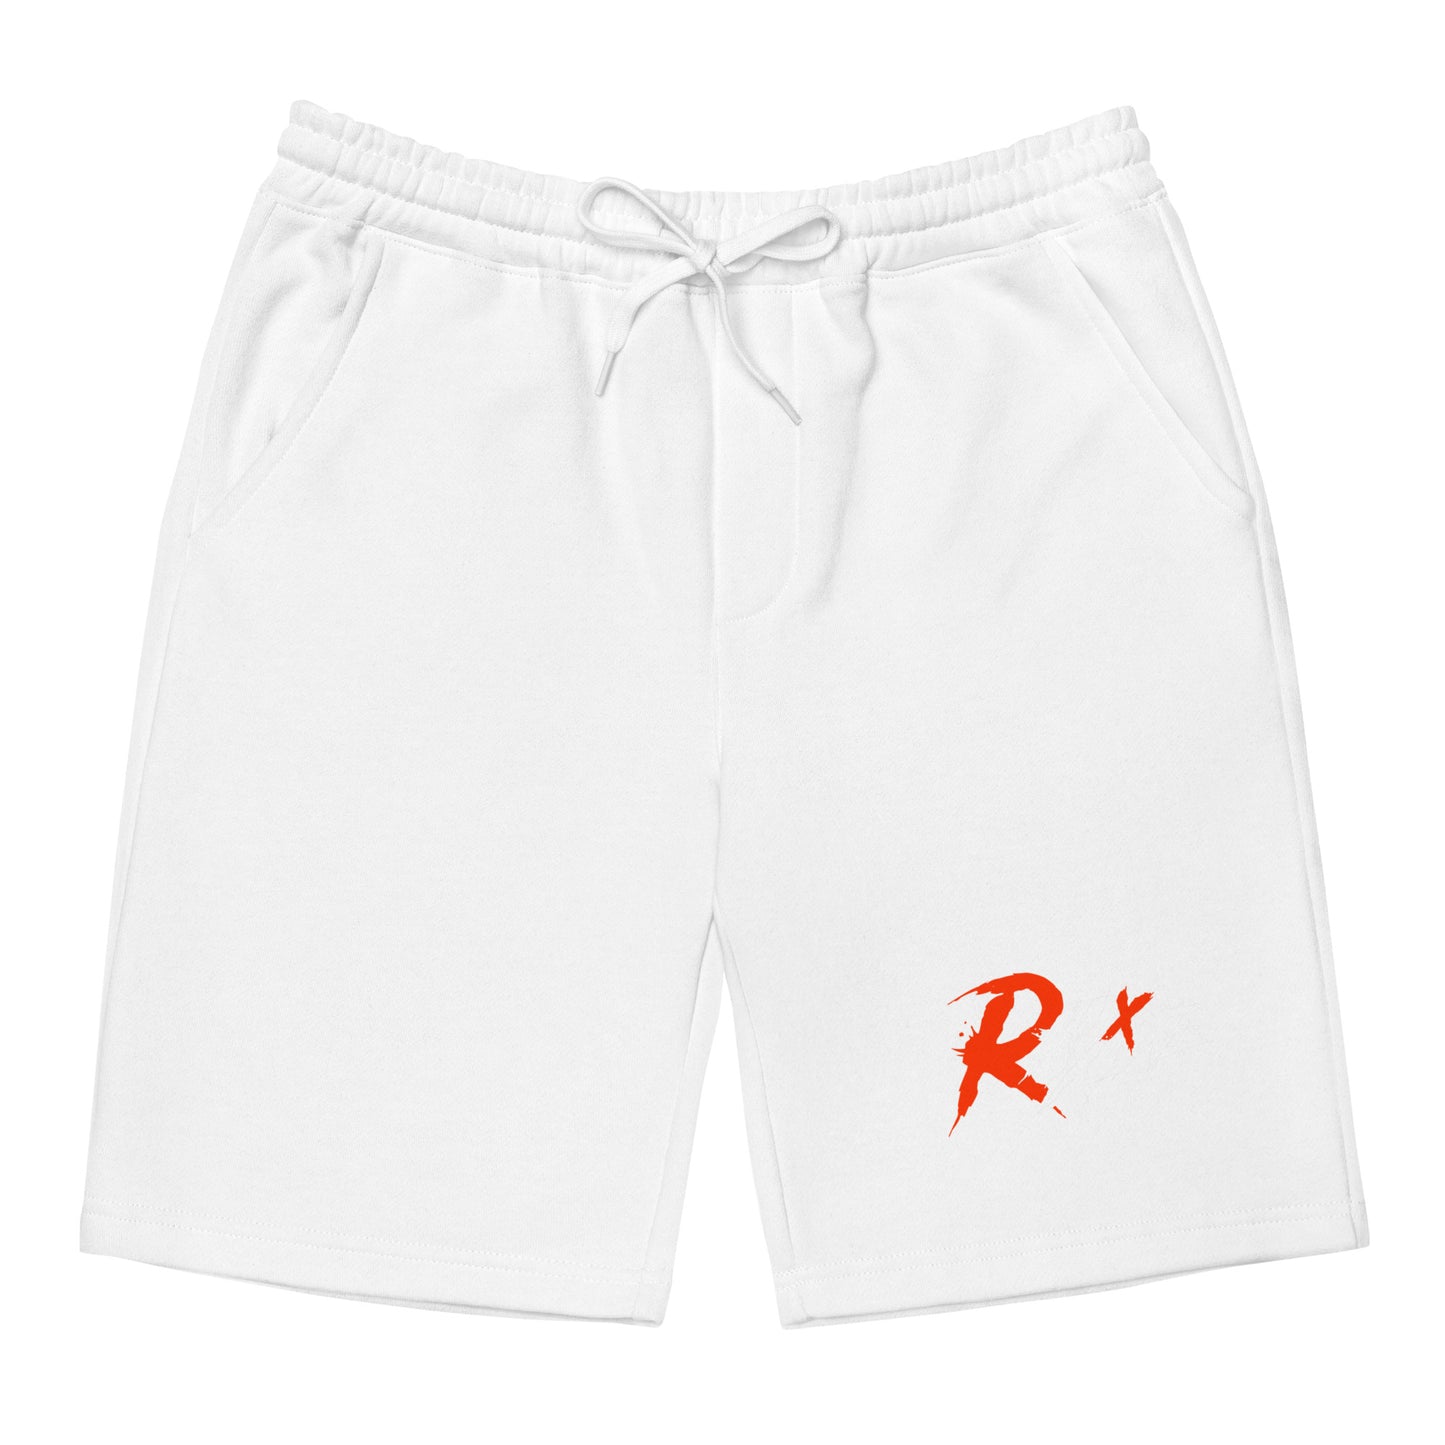 R Hxxdie Graphic Men's Fleece Shorts